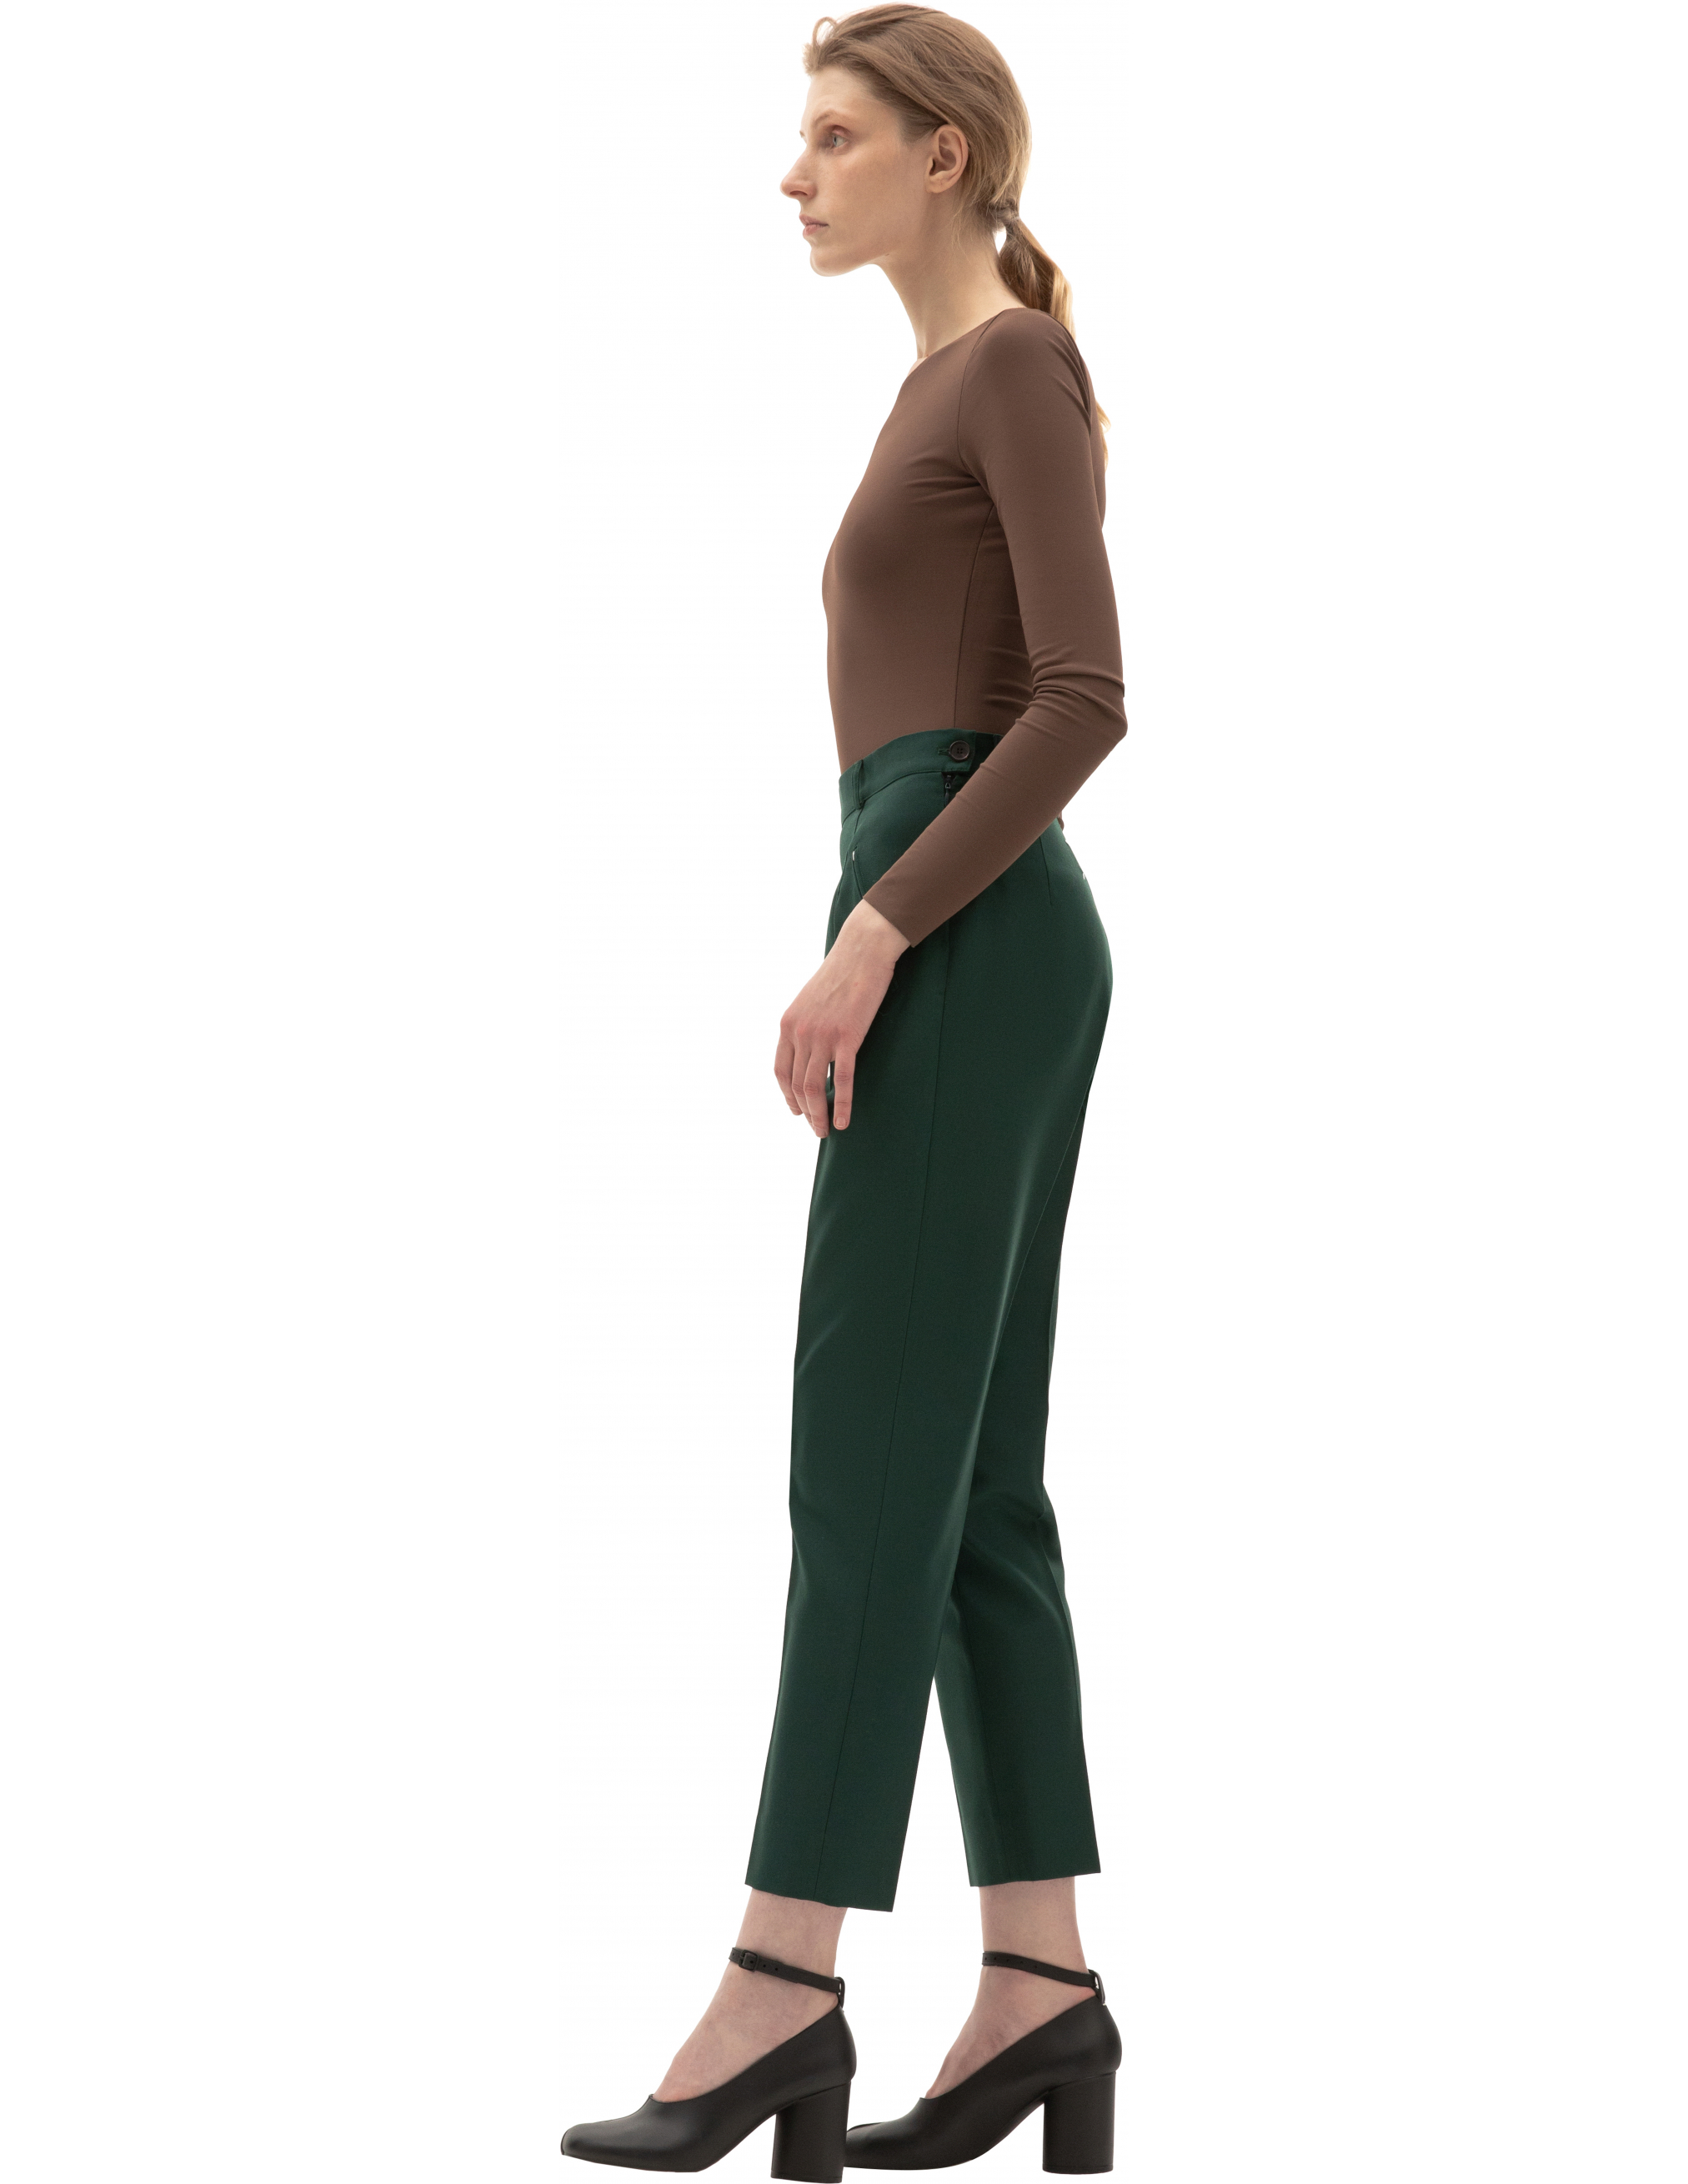 Зеленые брюки с высокой посадкой Maison Margiela S51KA0530/S53220/632, размер 44;42;40 S51KA0530/S53220/632 - фото 2